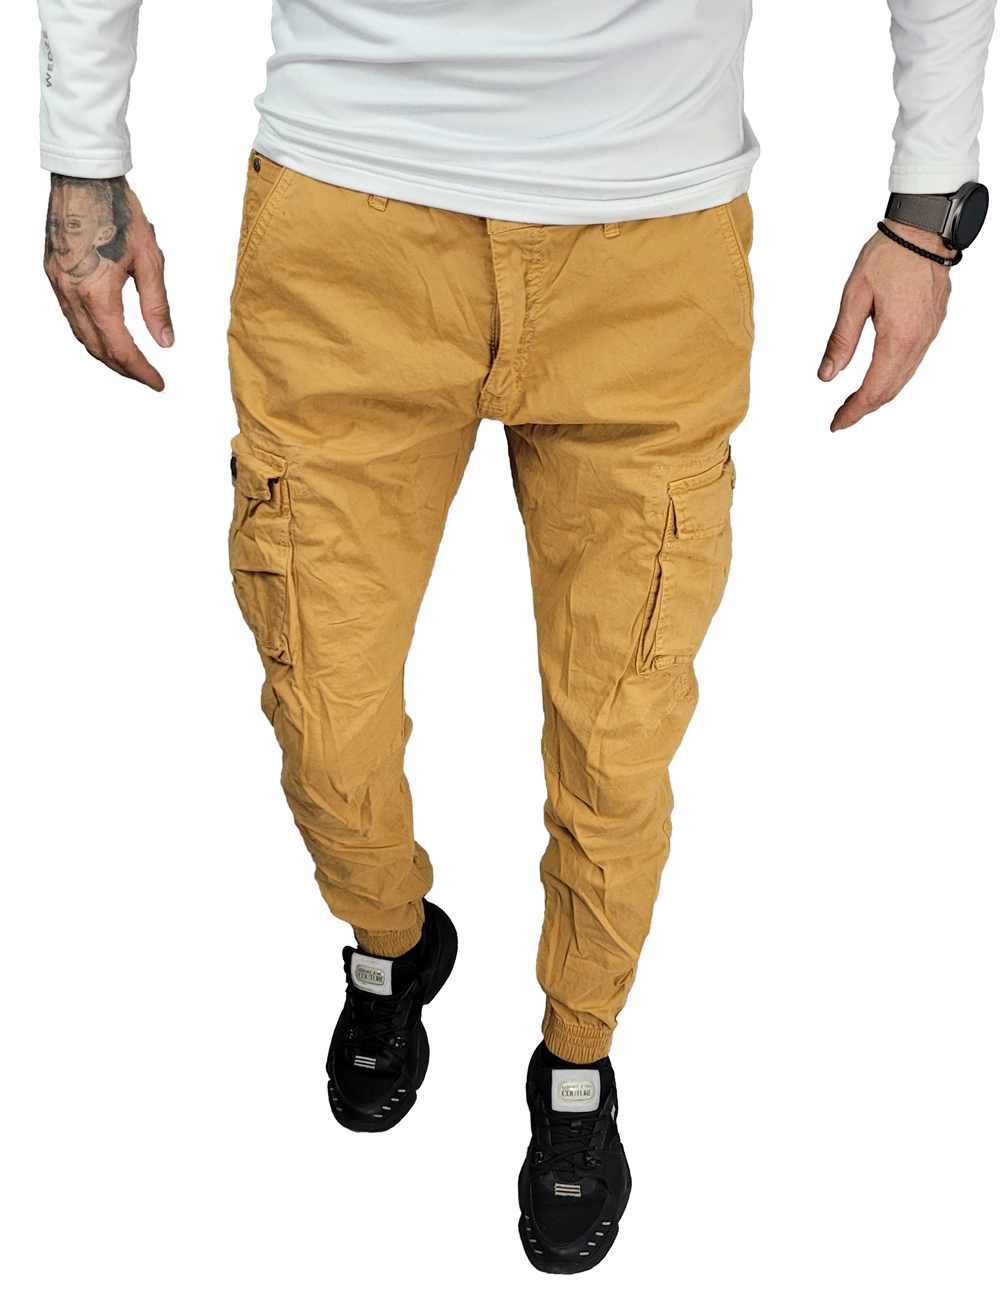 Pantaloni The Gangster – DSB303 (32,34,36,38,40) –